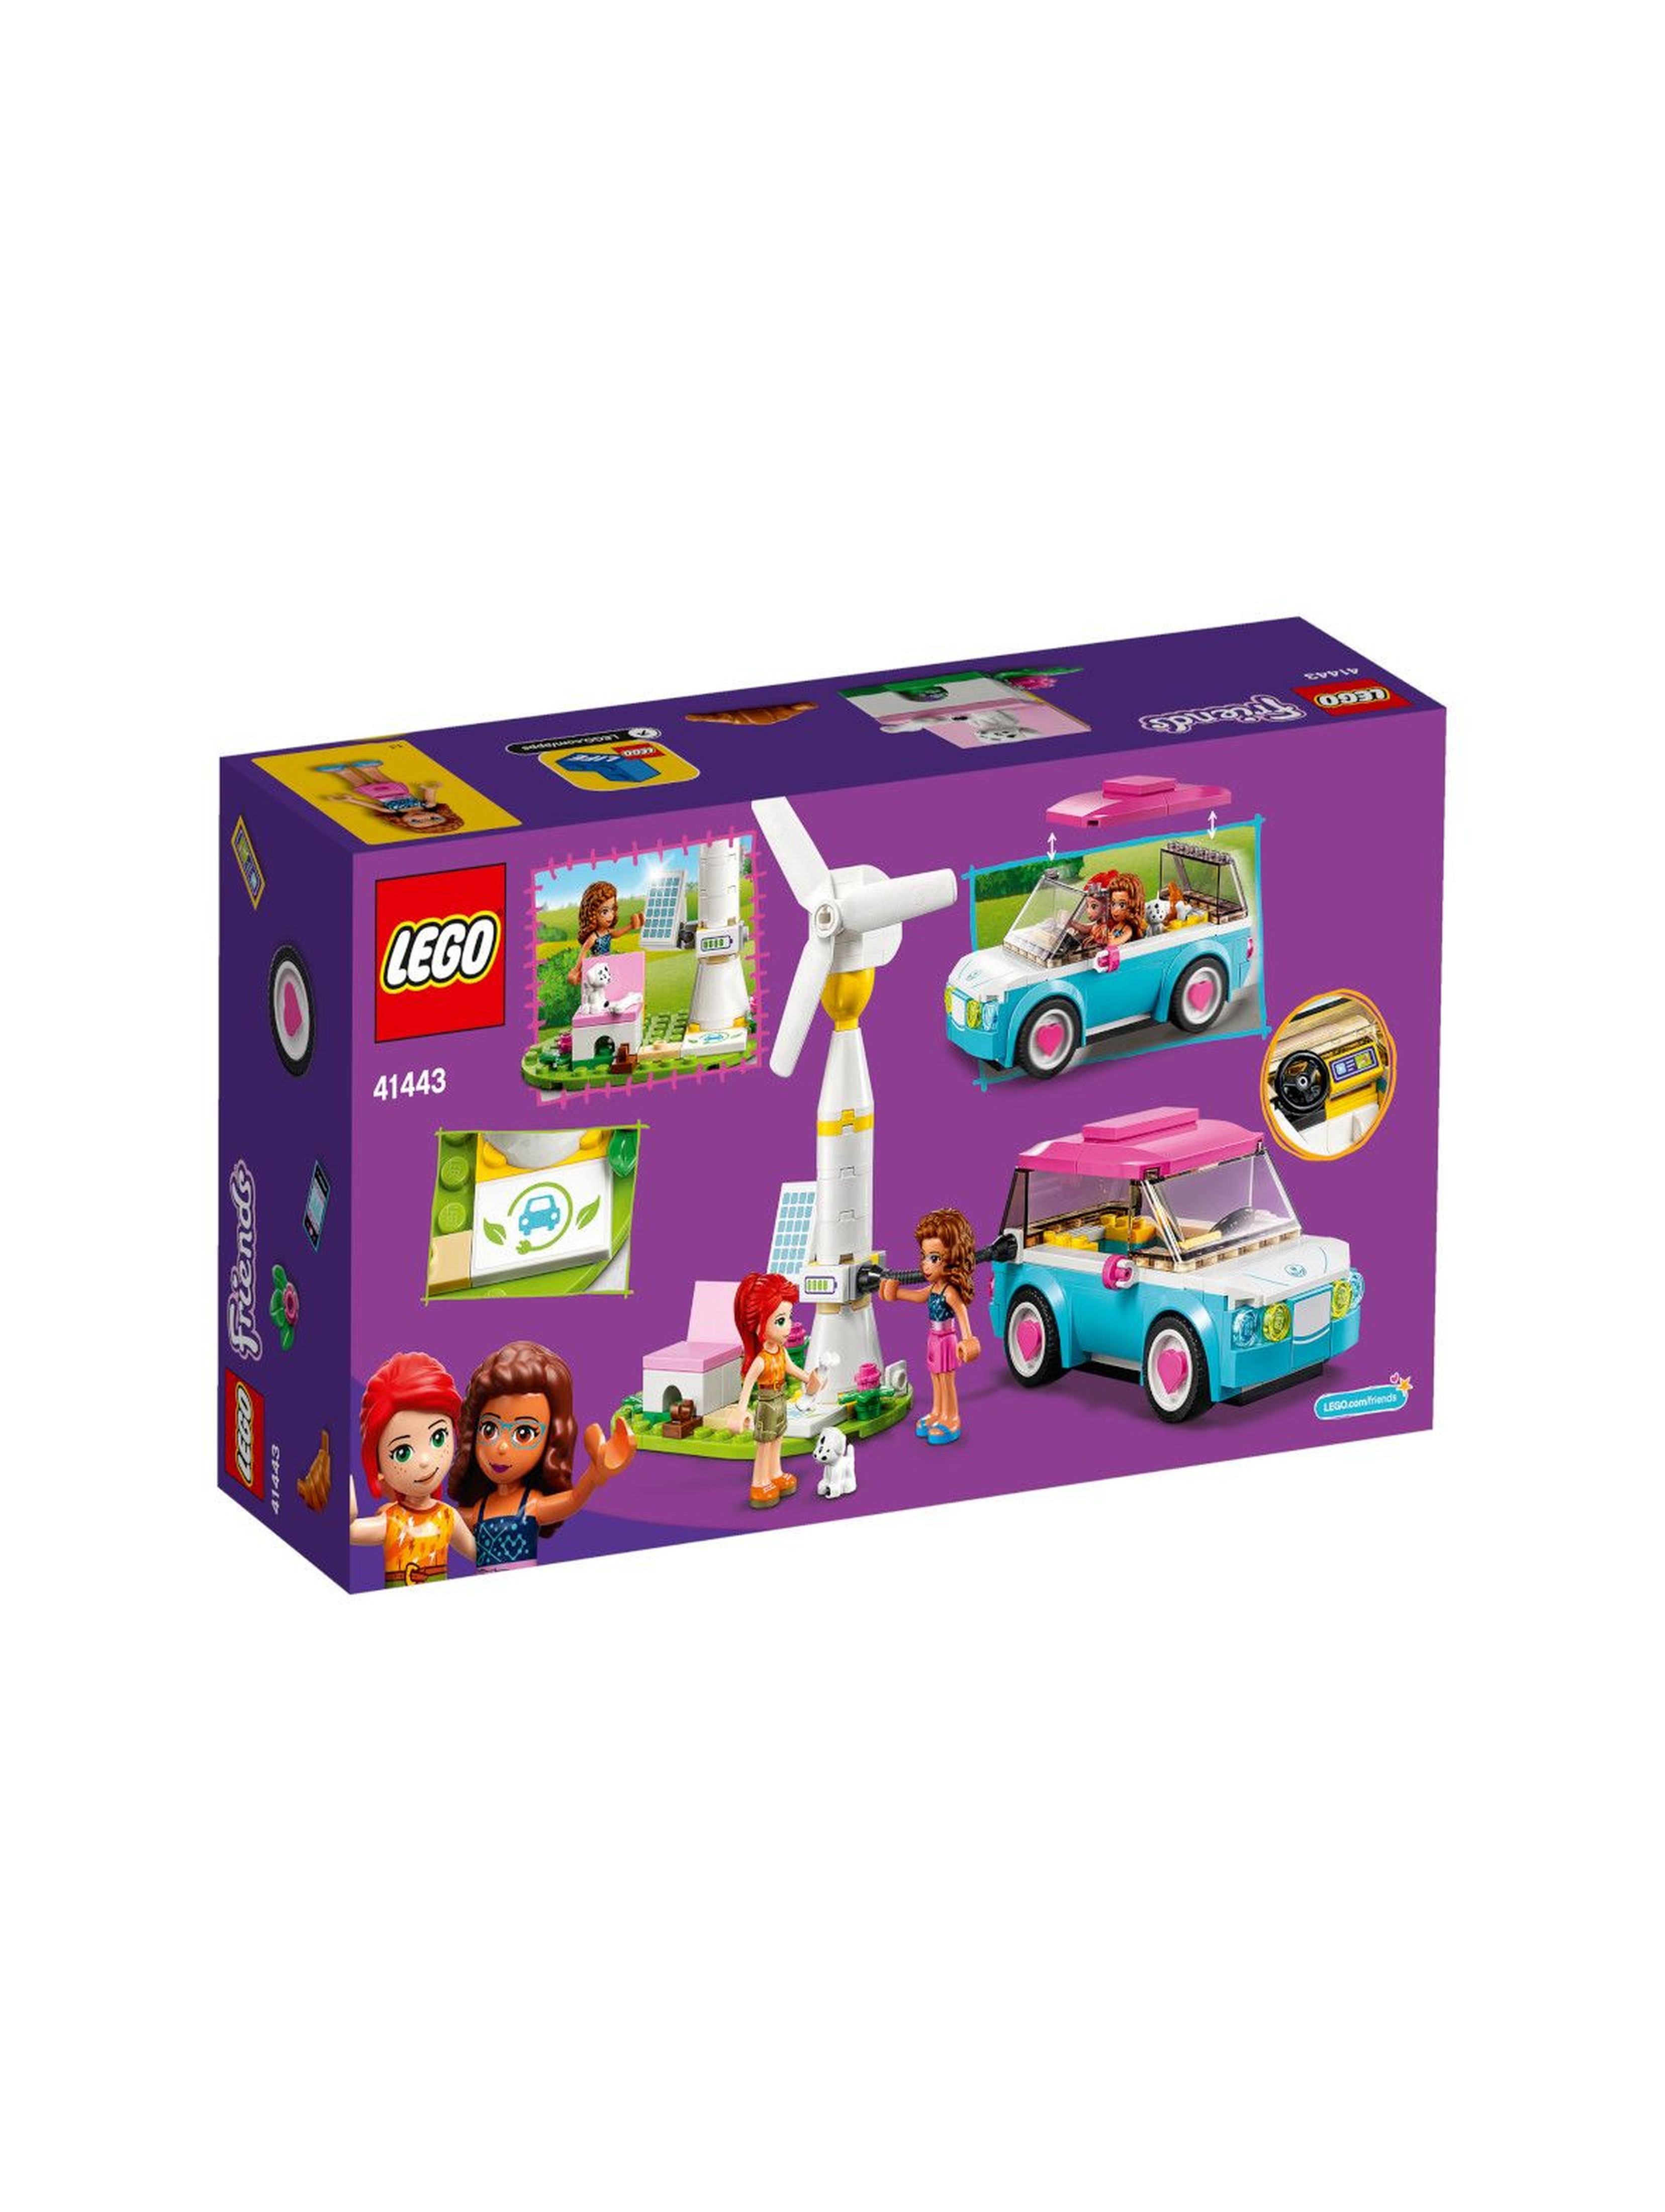 Klocki LEGO Friends - Samochód elektryczny Olivii - 183 el - wiek 6+